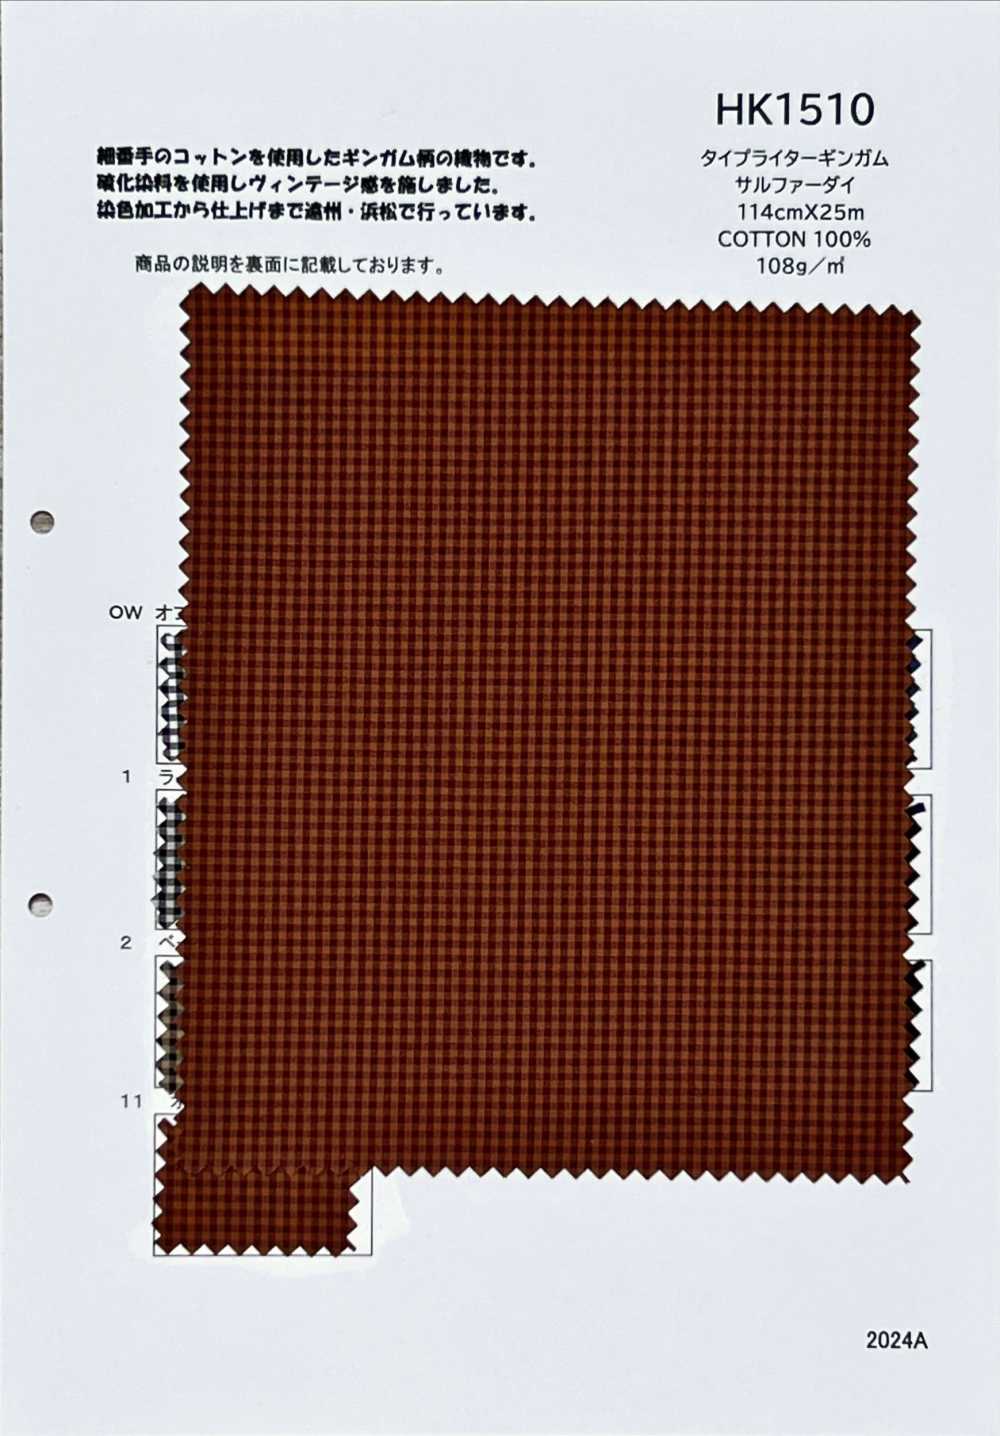 HK1510 Tinte De Azufre A Cuadros Para Tela De Máquina De Escribir[Fabrica Textil] KOYAMA